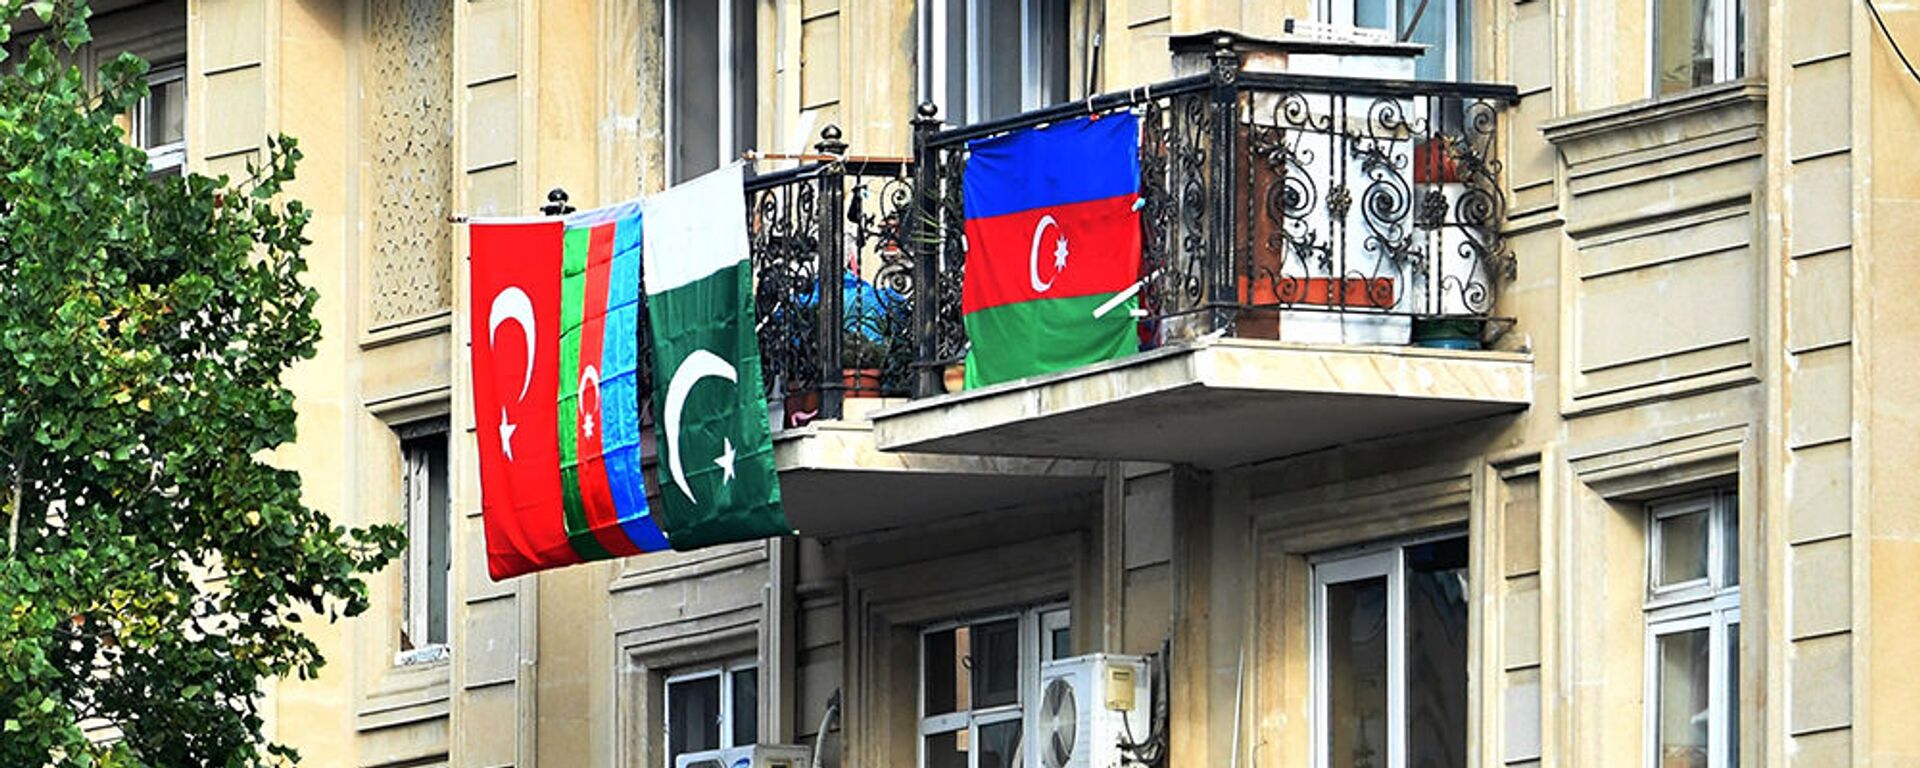 Флаги Азербайджана, Турции и Пакистана, вывешенные на балконе жилого дома в Баку - Sputnik Արմենիա, 1920, 30.07.2021